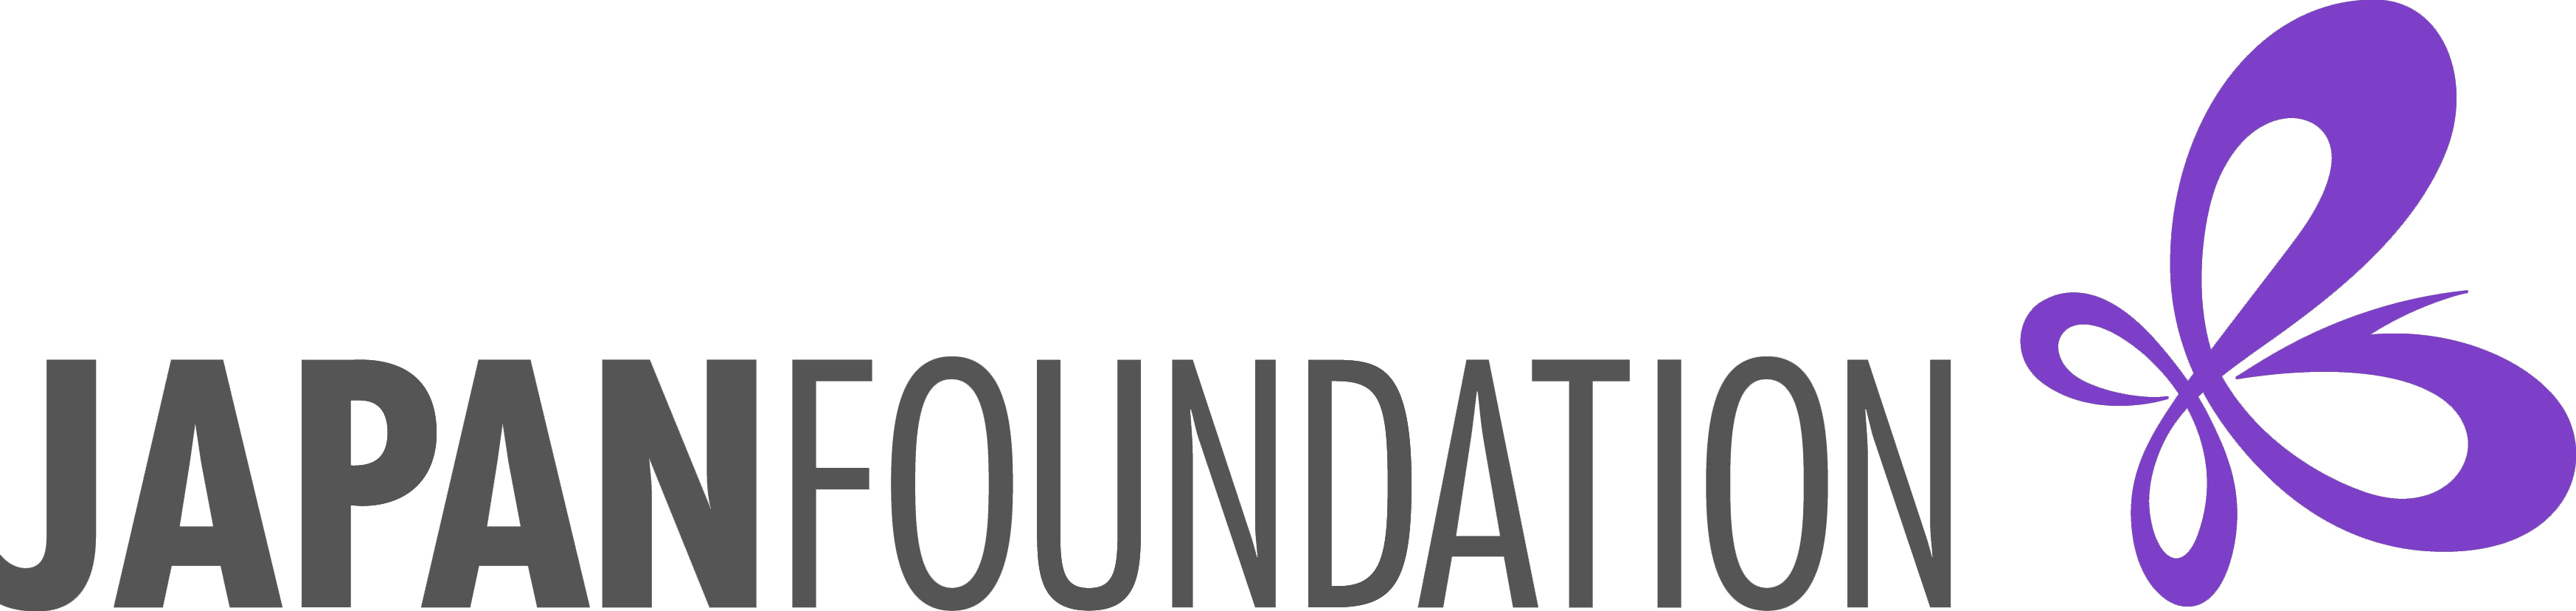 国際交流基金ロゴ